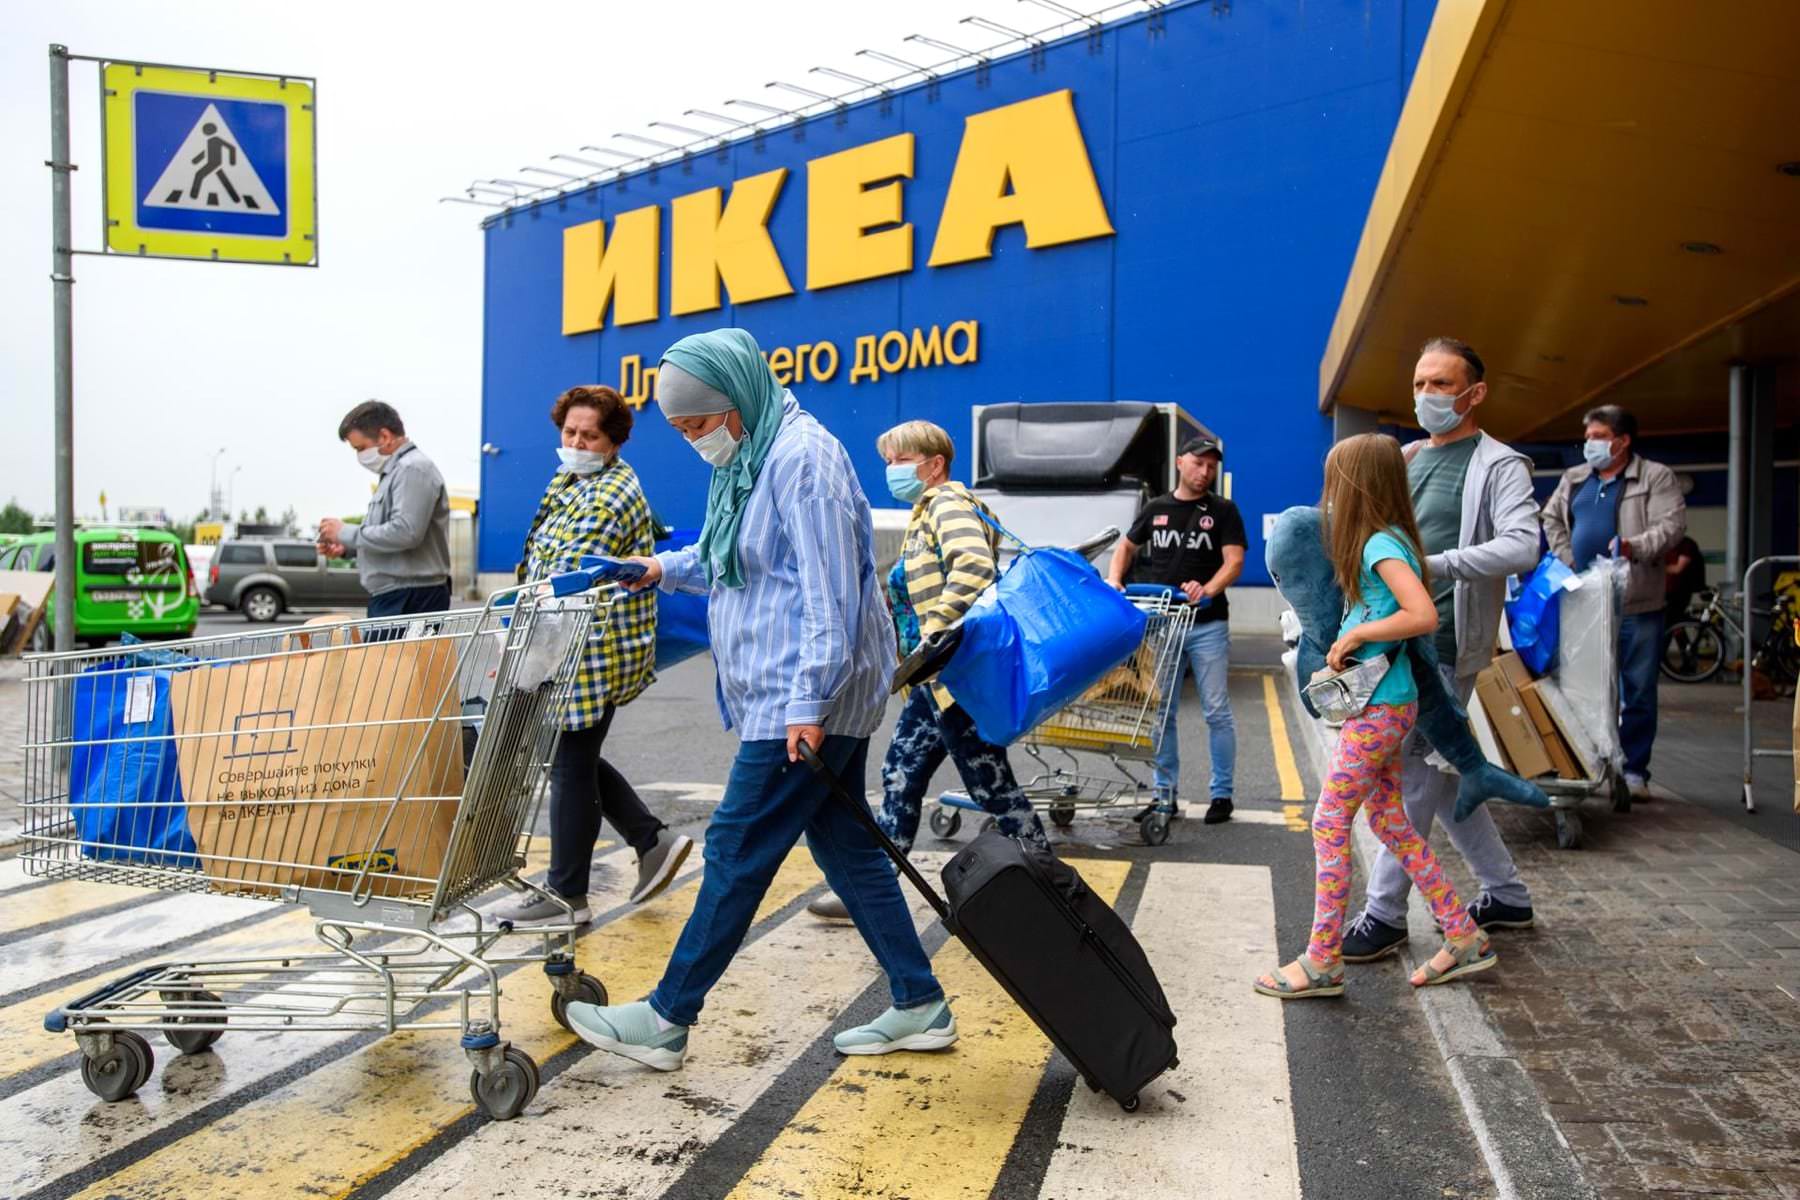 Купить товары IKEA в России вновь стало возможно. Цены приятно удивляют